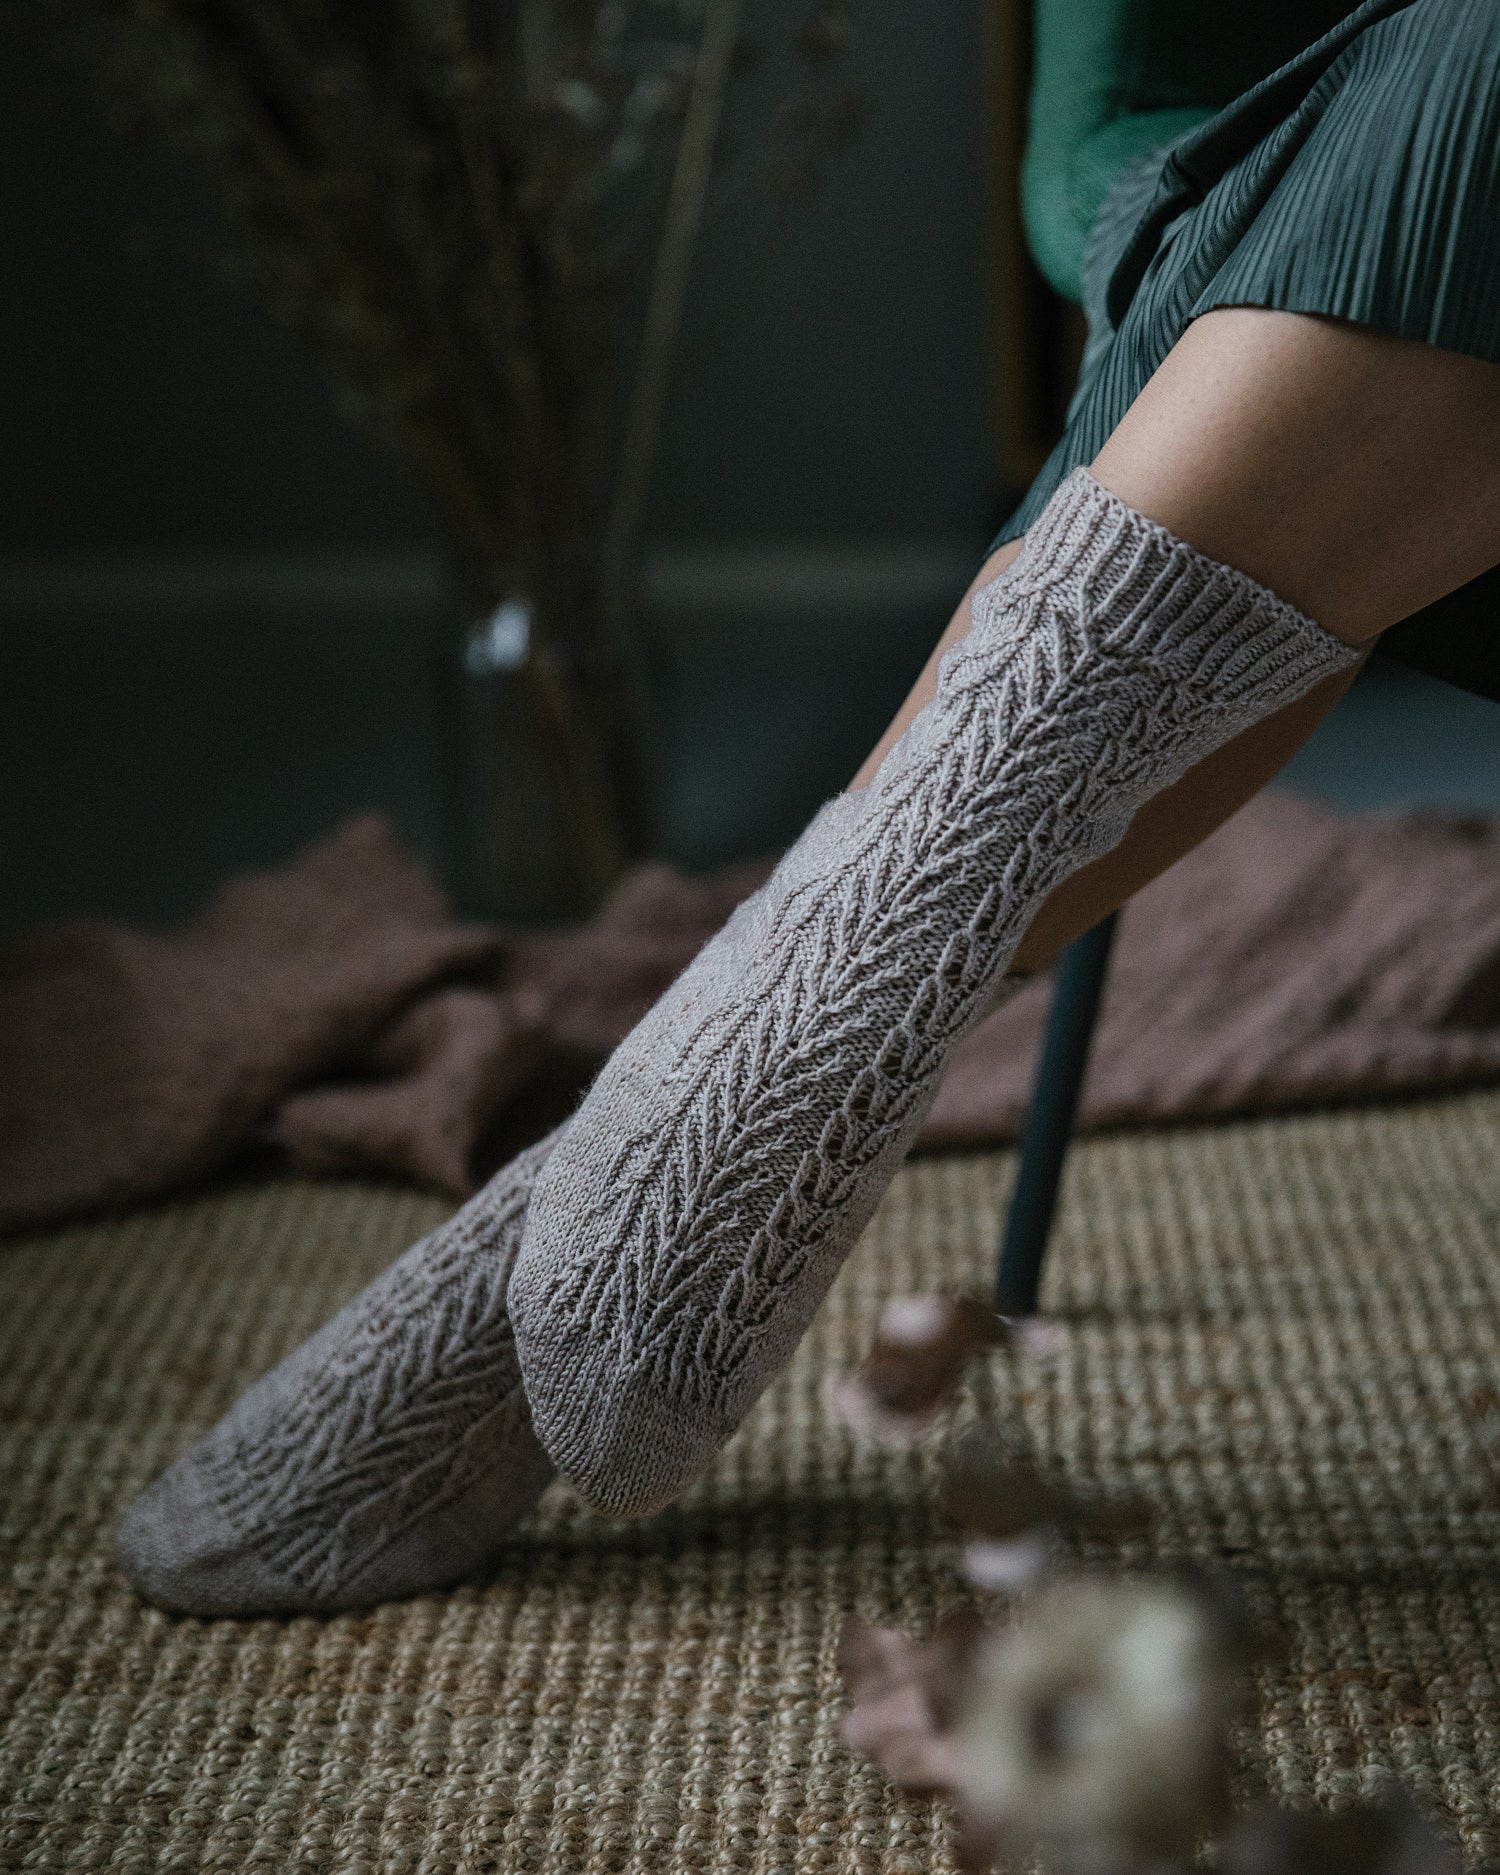 52 Weeks of Socks Volume 2 – Avenue Yarns